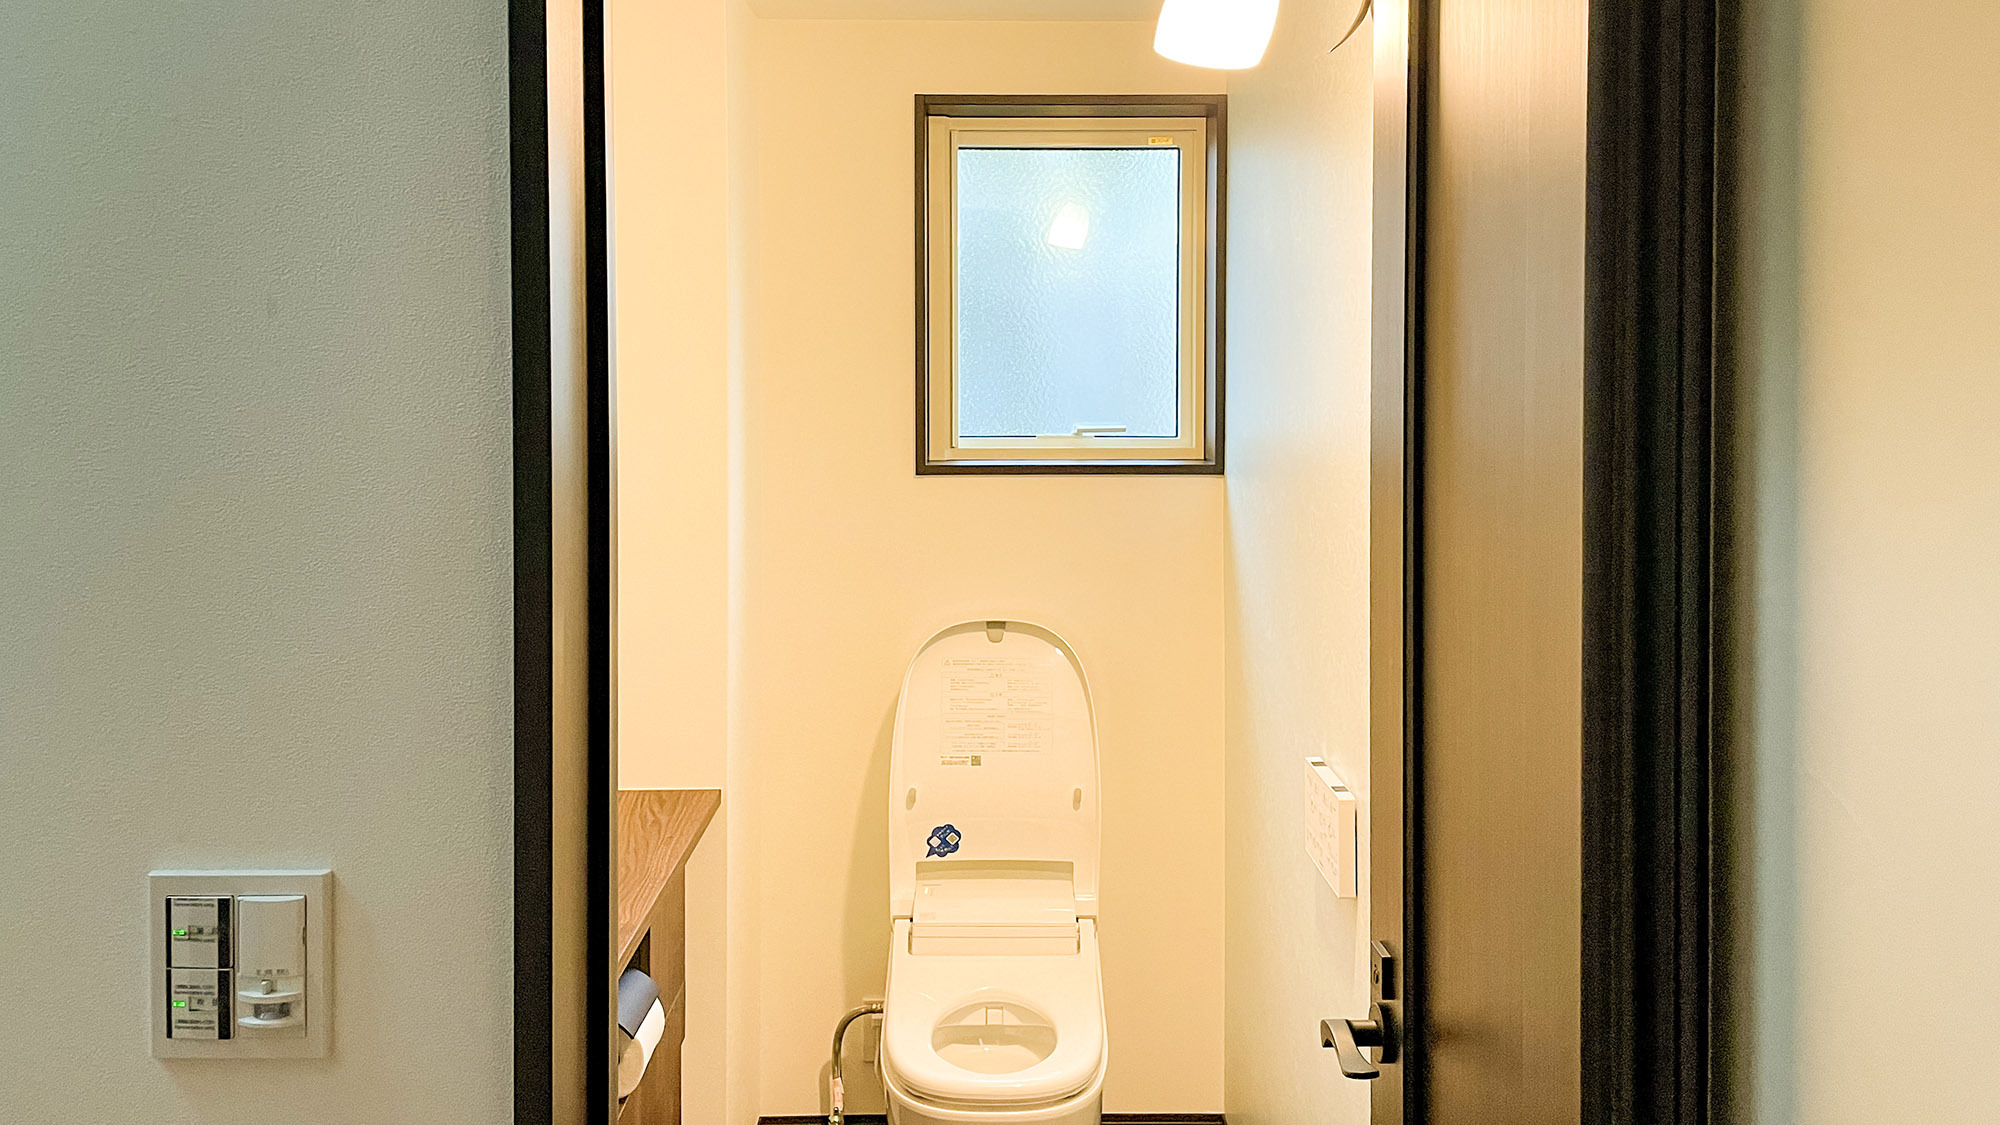 ・【サウスヴィラ】便器の自動洗浄機能がついたシャワートイレを完備